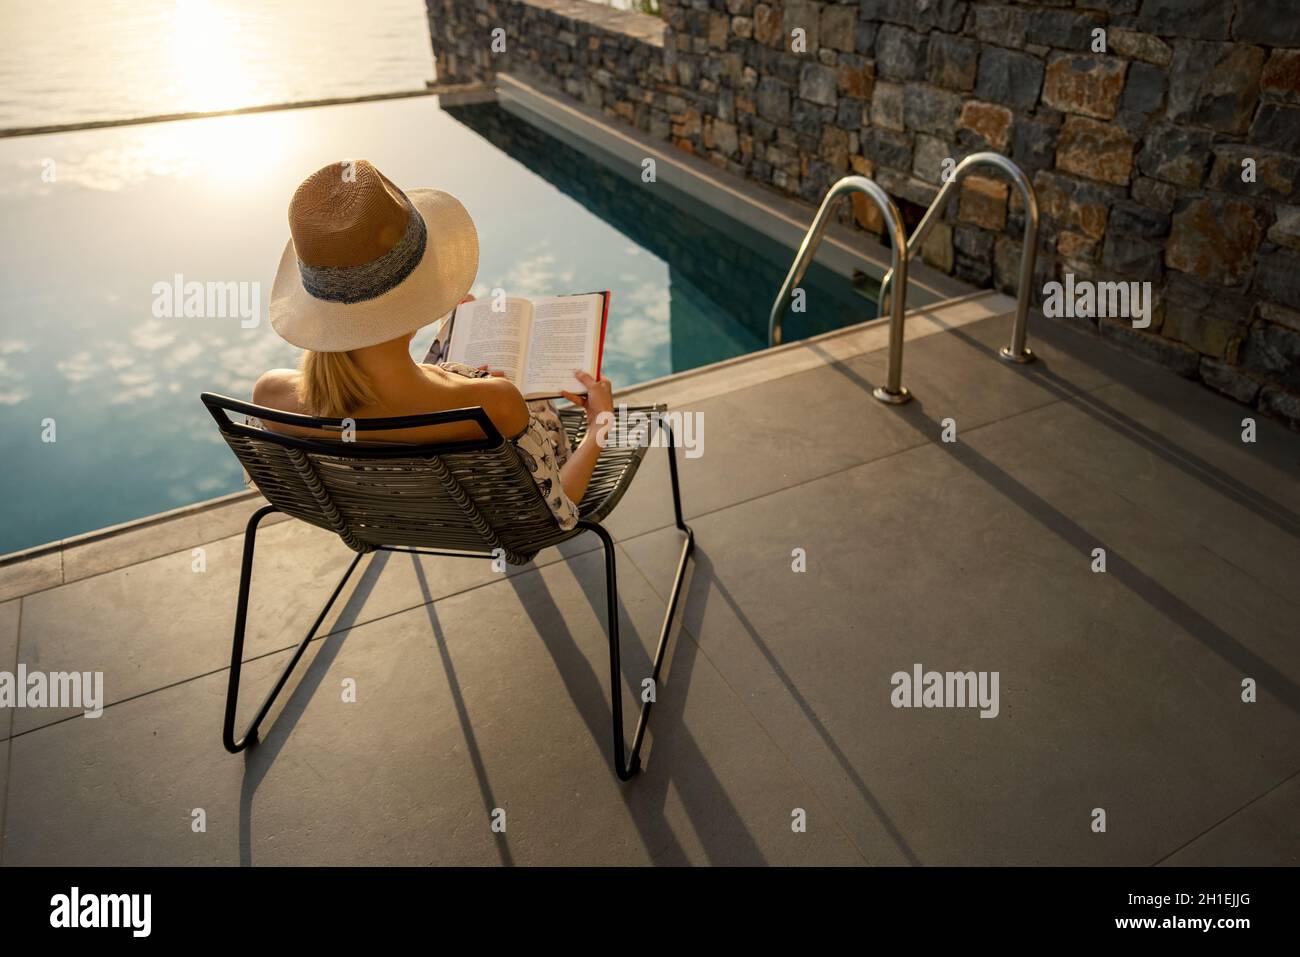 vacanza rilassante - donna seduta in sedia e lettura di un libro sulla terrazza vicino alla piscina in villa di lusso Foto Stock